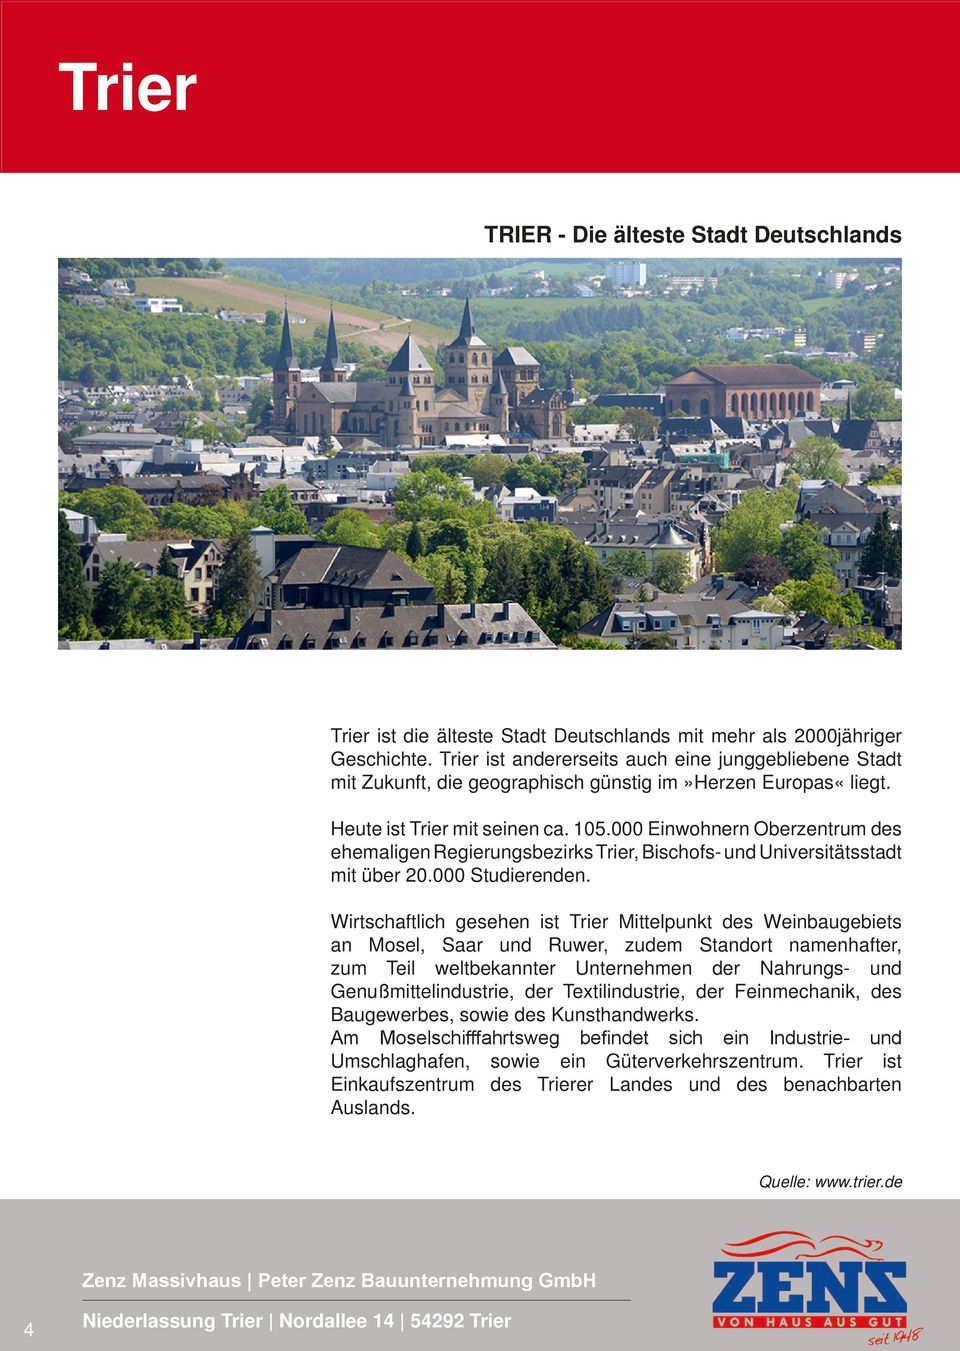 000 Einwohnern Oberzentrum des ehemaligen Regierungsbezirks Trier, Bischofs- und Universitätsstadt mit über 20.000 Studierenden.